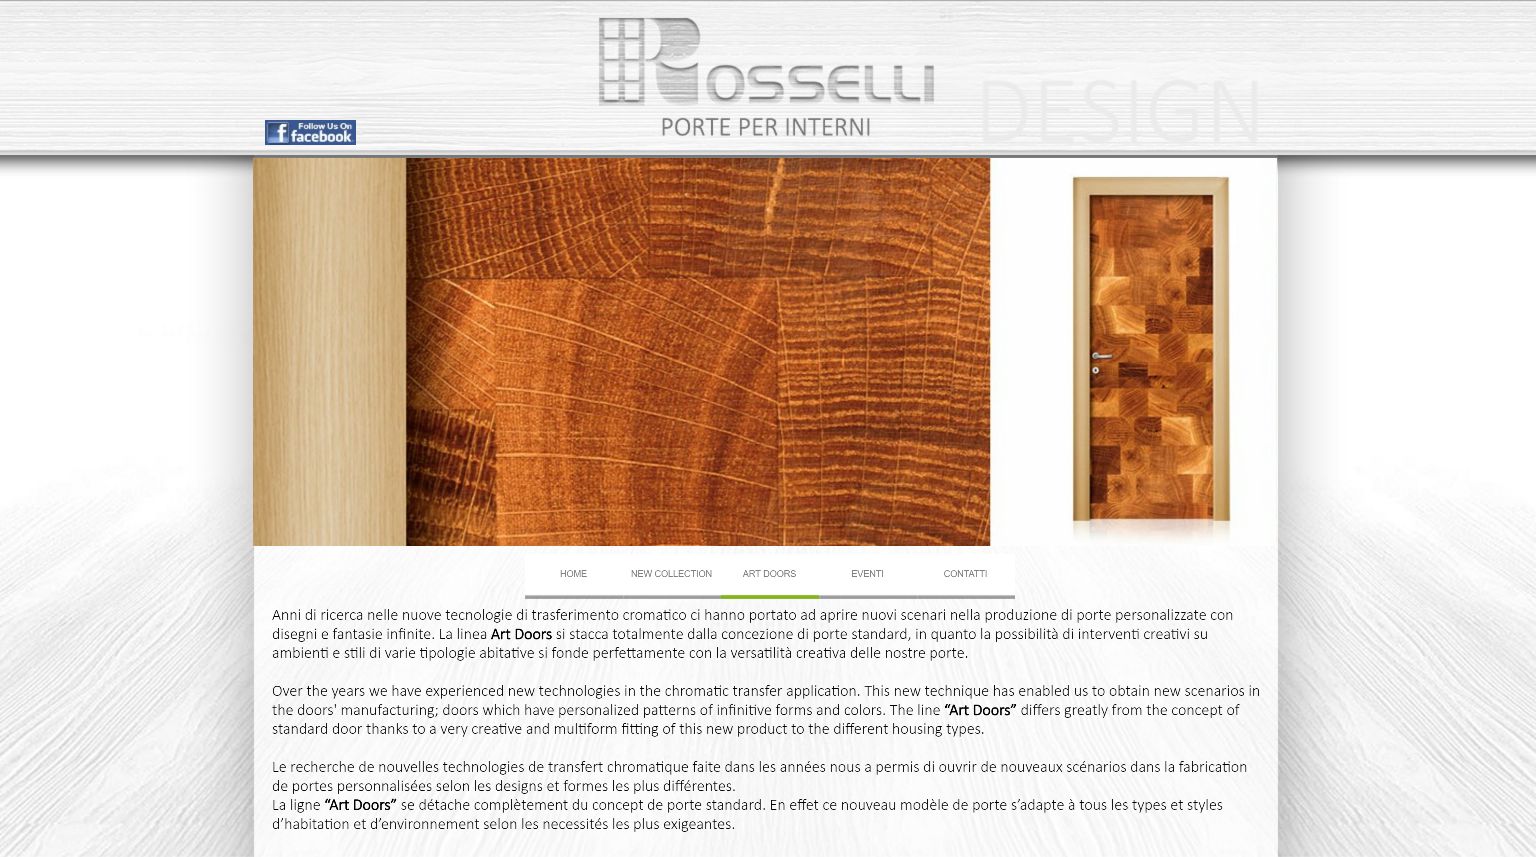 Pagina sito web Rosselli - porte per interni